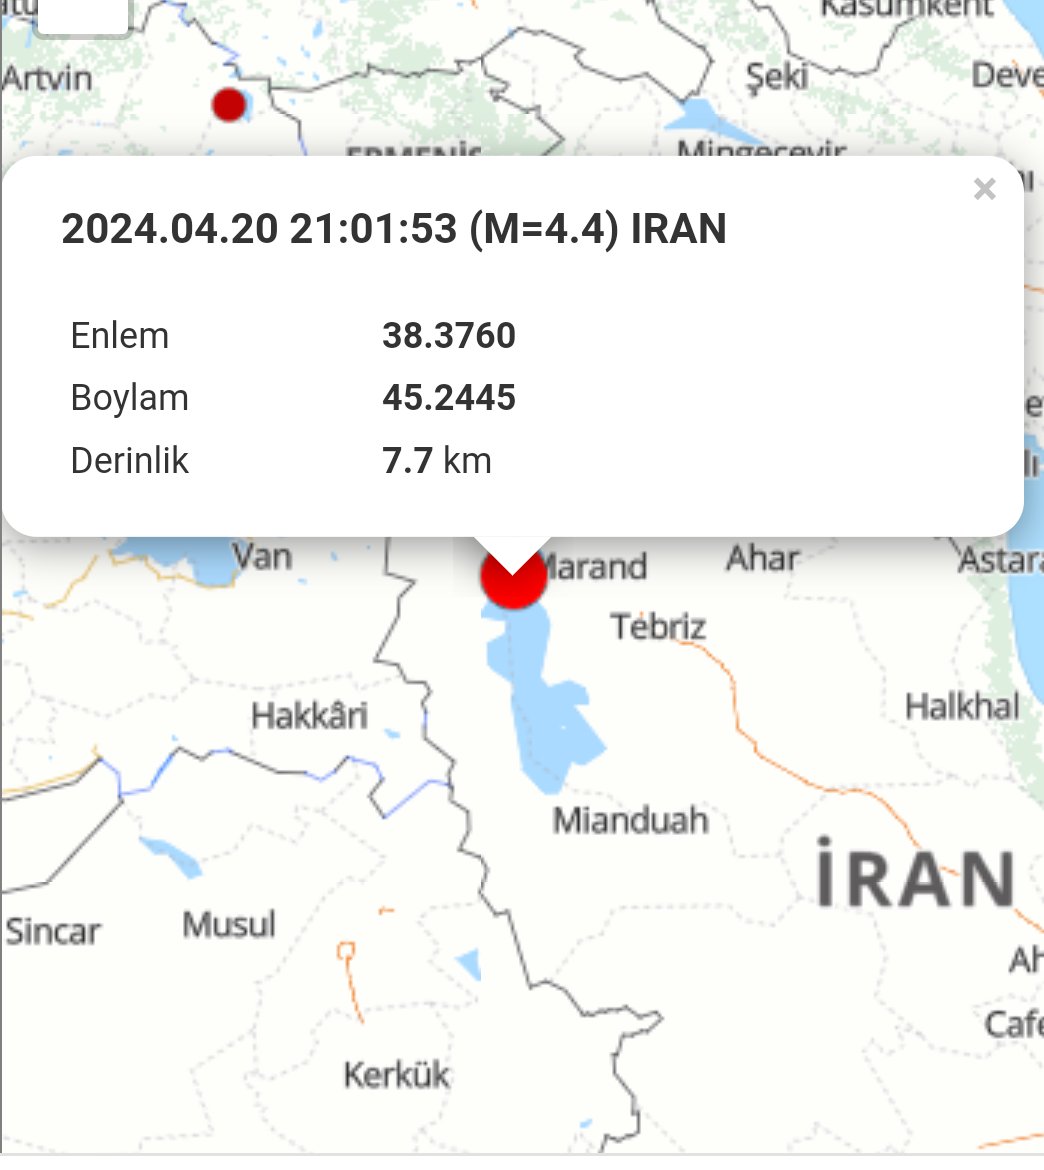 İran kesimlerinde depremler devam edecek!
Van/Şırnak/Hakkari dikkat etsin! Bu üç il ve bu bölge ve biraz güney kesimleri ve Irak kuzeyi riskli bir işaret verdi.
Bölge 5.5 M+ değer görebilir vaziyette ⚠️
Ayrıca Doğu Anadolu da bugün 5.0 M üstü bir değeri de görebilir.